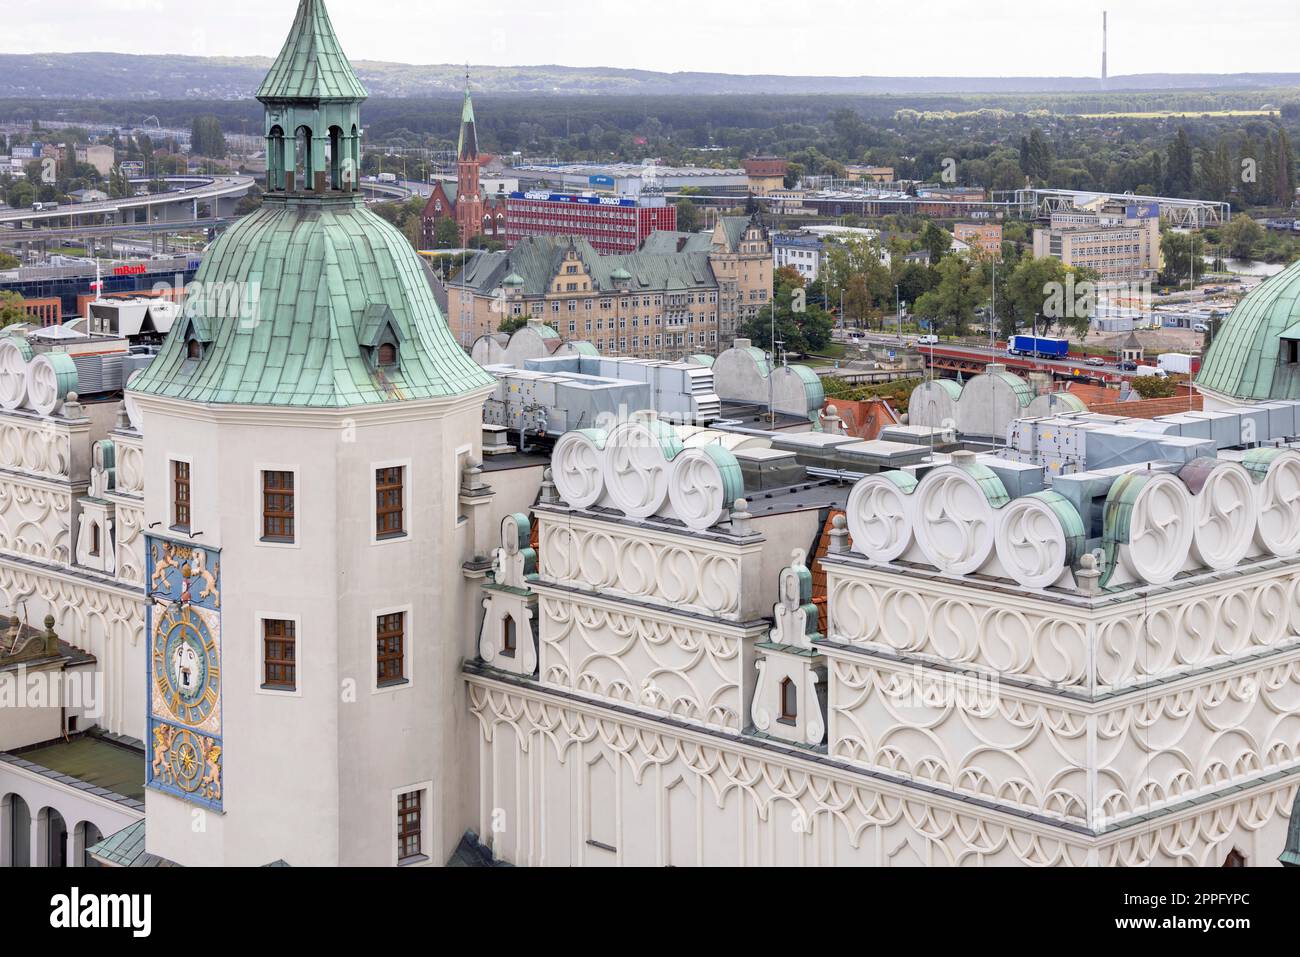 Blick aus der Vogelperspektive auf das Herzogsschloss mit Uhrenturm und einer dekorativen barocken Uhr, Szczecin, Polen Stockfoto